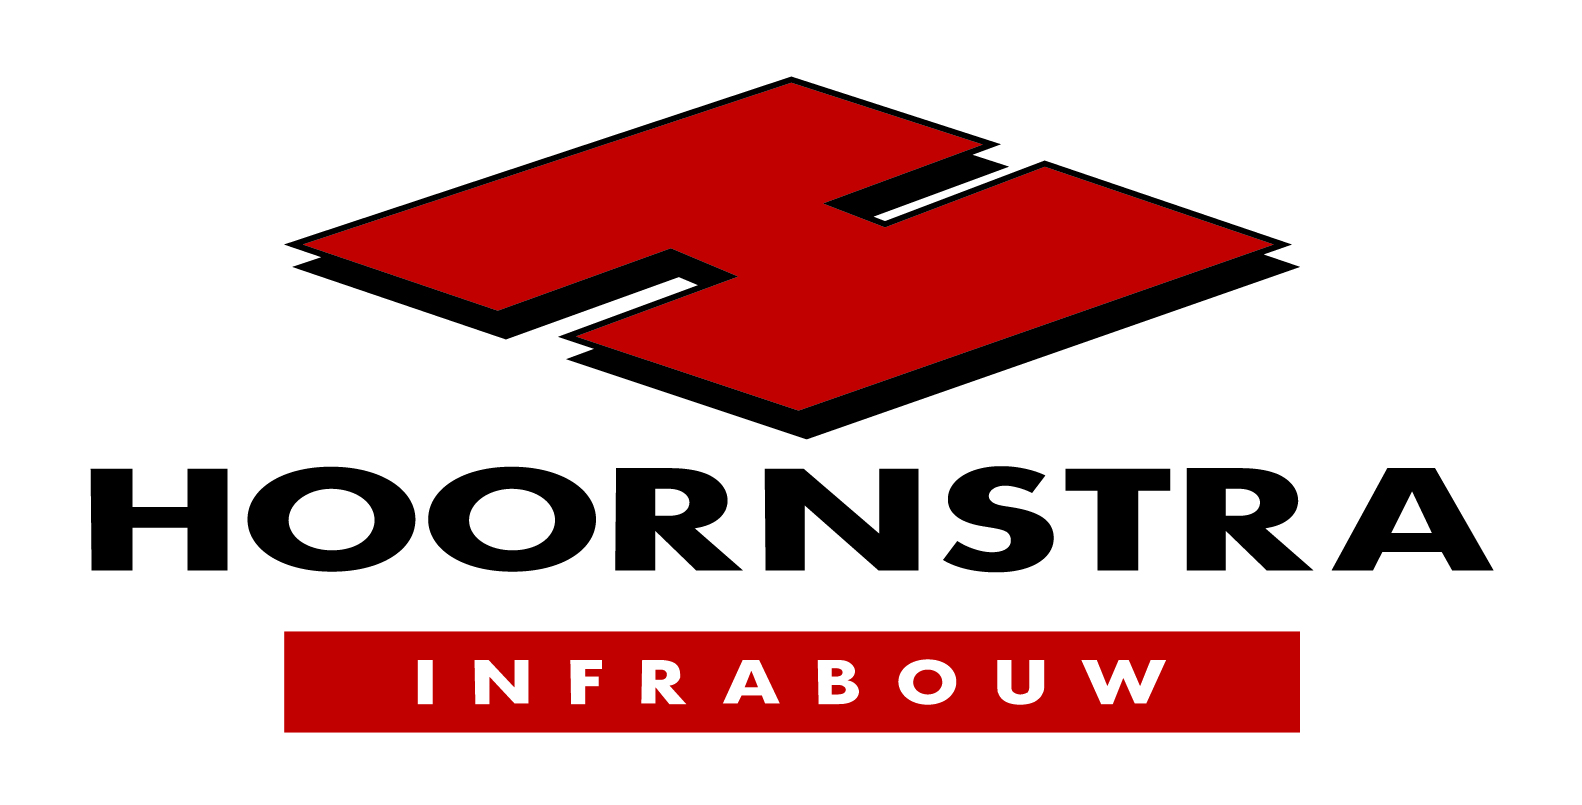 Hoornstra-infrabouw-logo-CMYK (1)